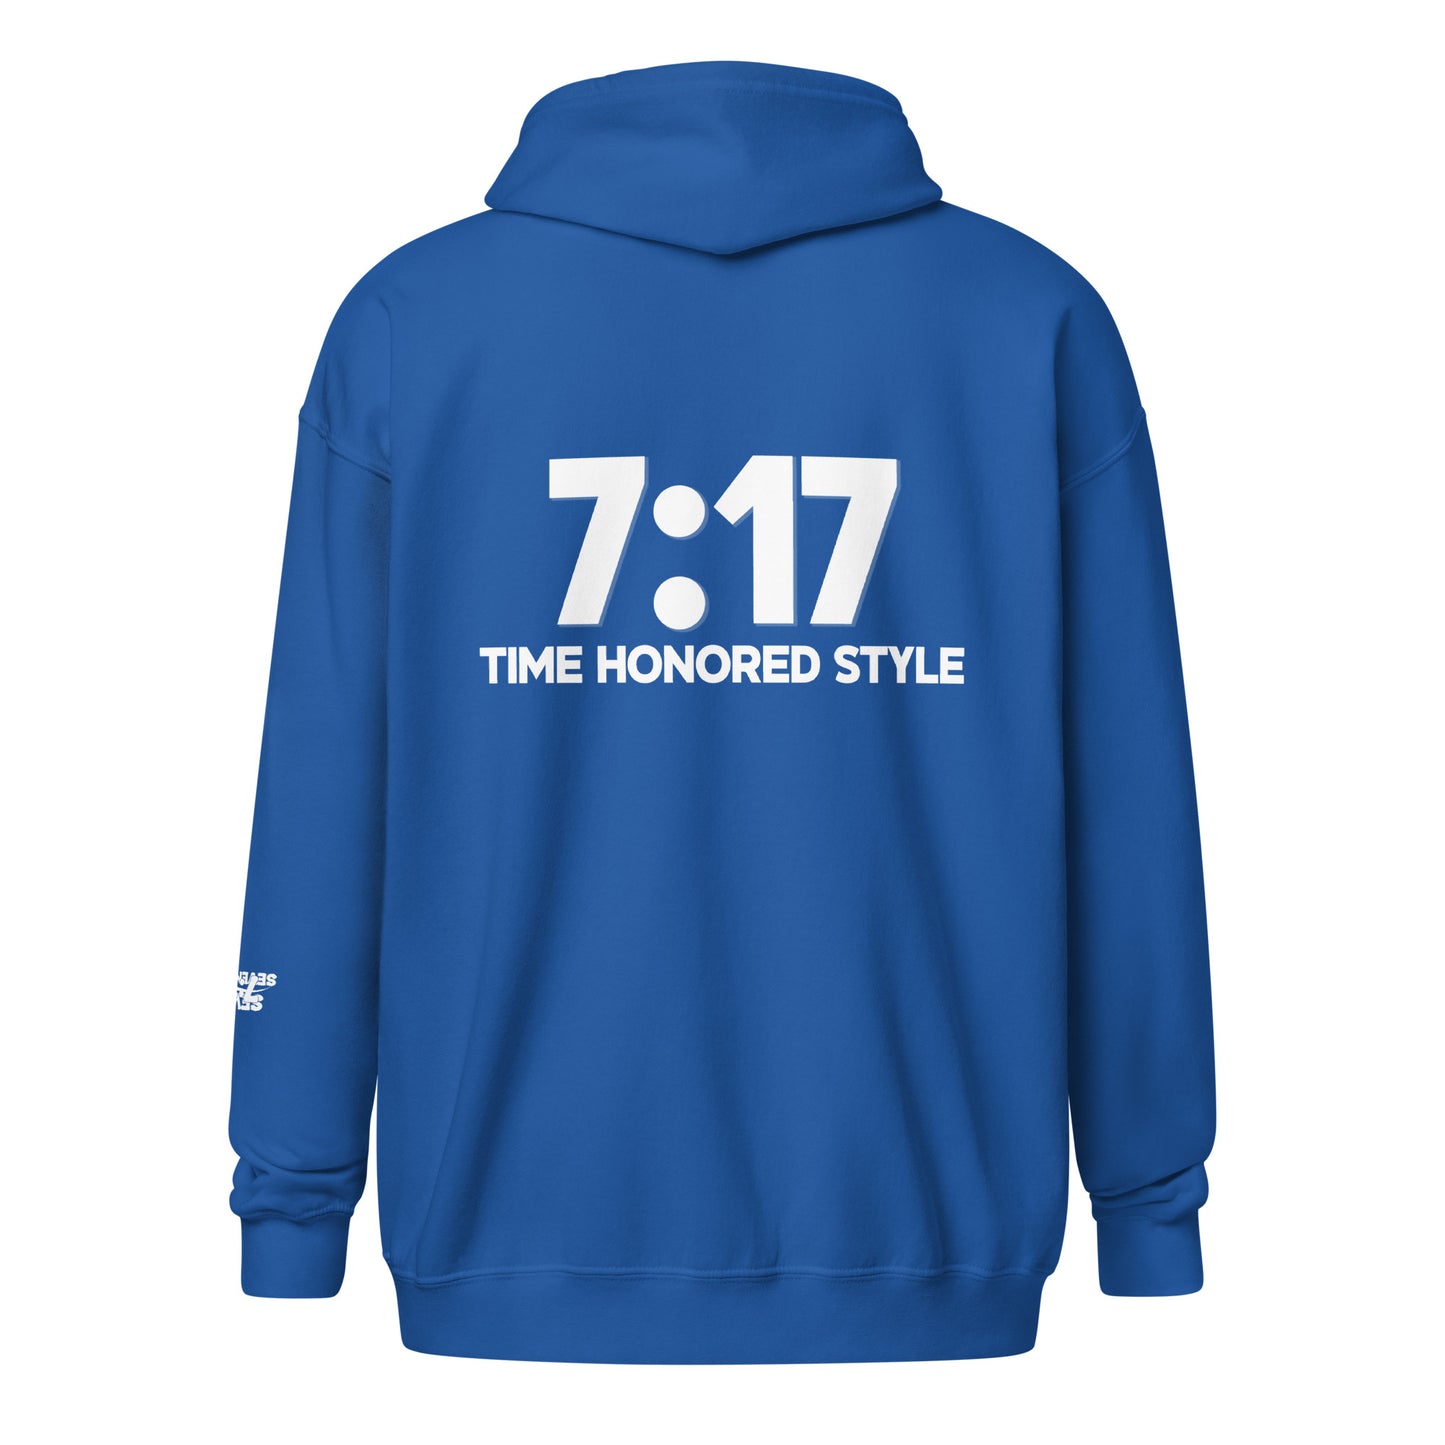 Time Honored Style (Zip Hoodie)